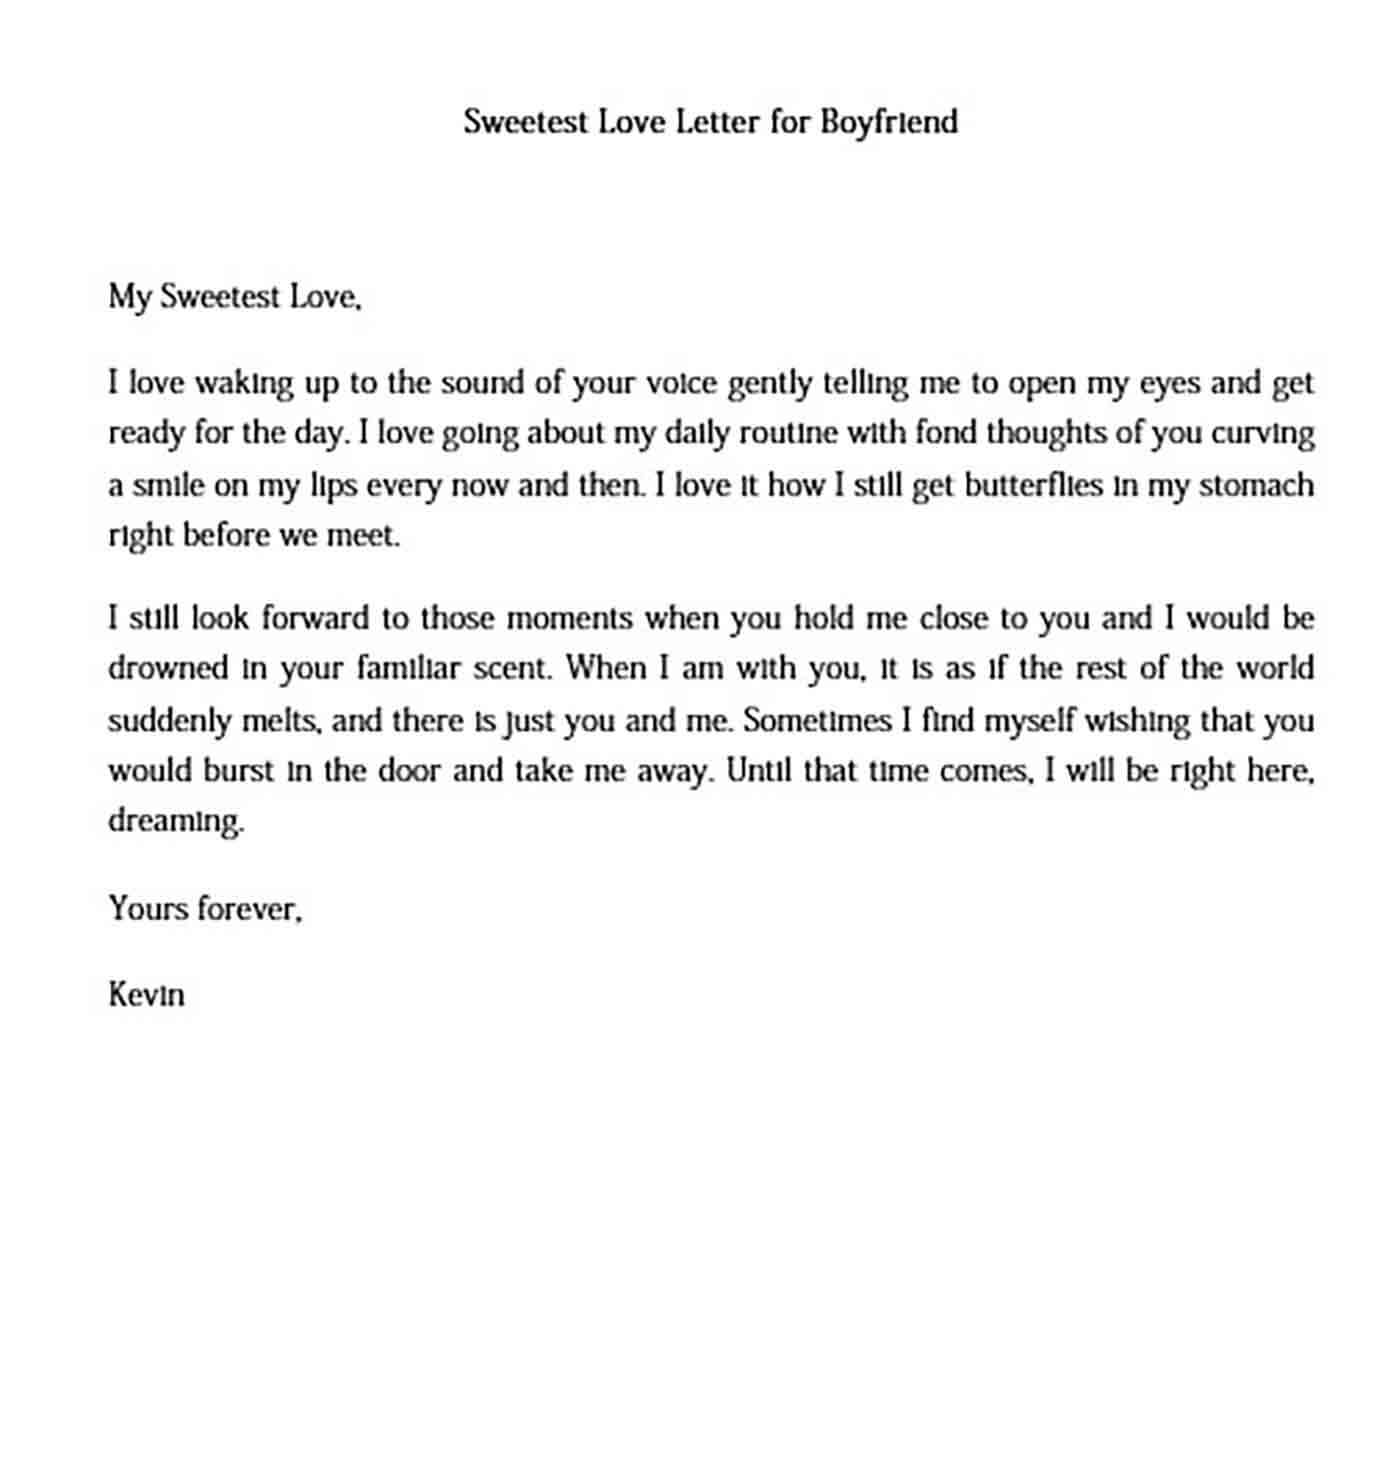 sweetest love letter for boyfriend